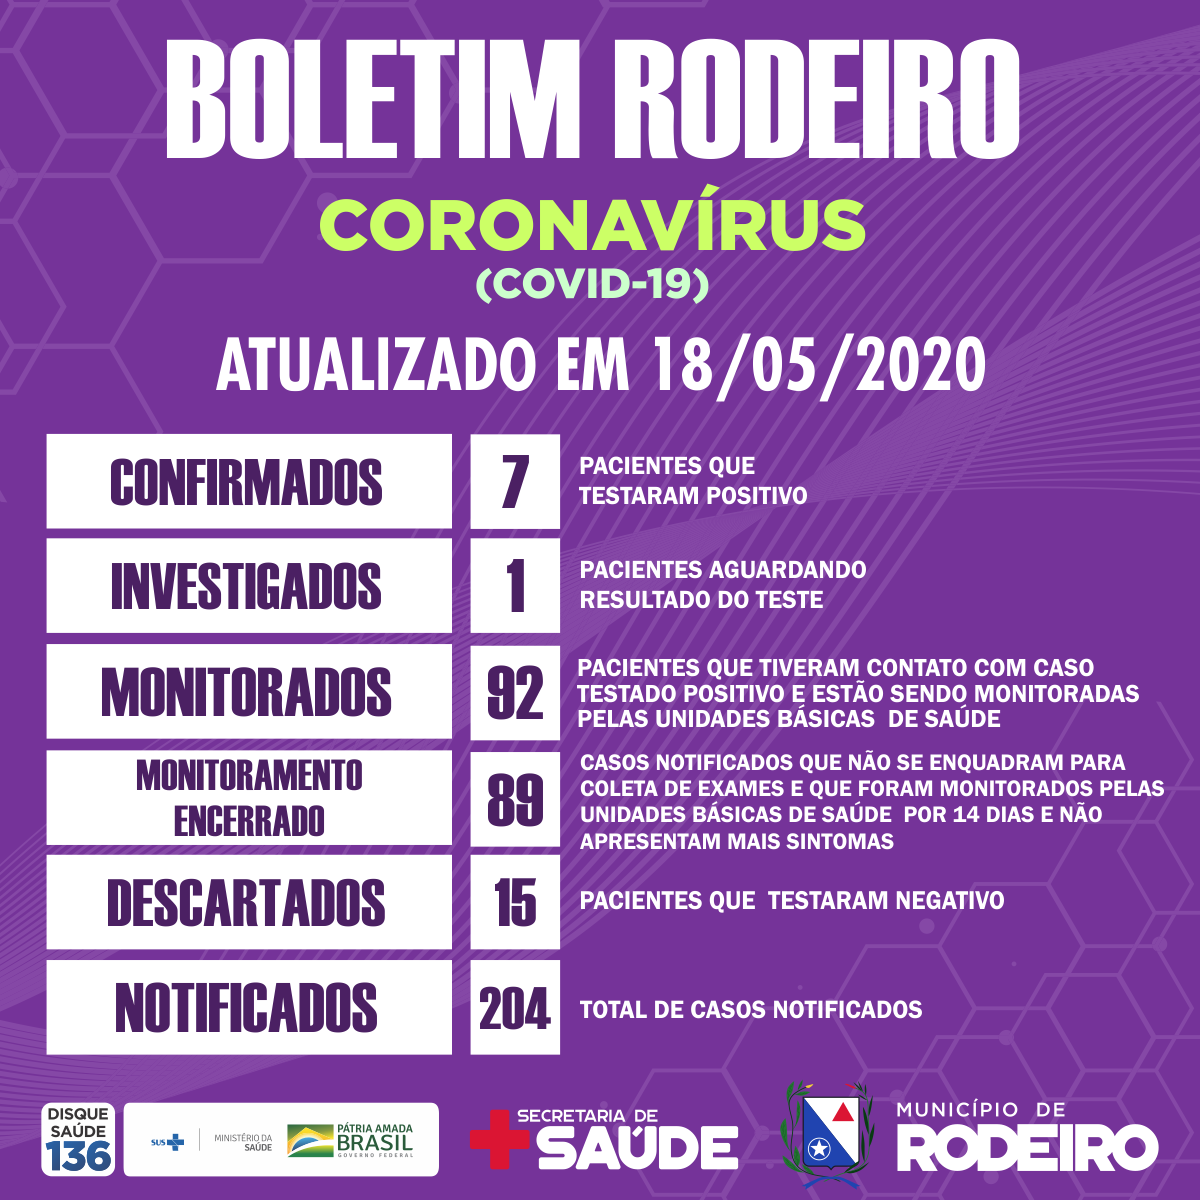 Boletim epidemiológico do Município de Rodeiro, atualização sobre coronavírus em 18/05/2020